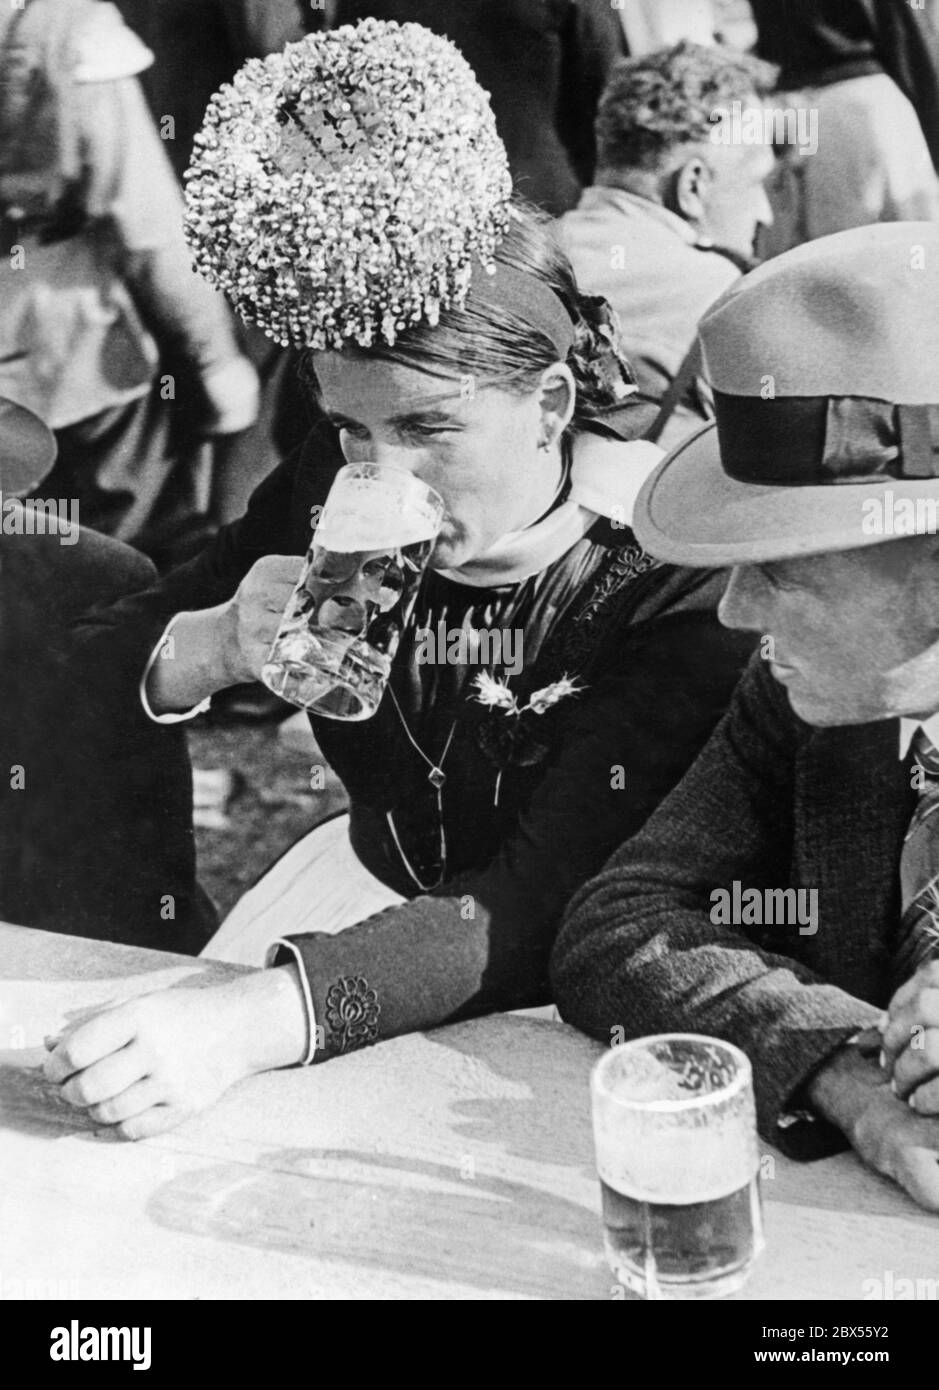 Une femme porte un costume folklorique festif avec une couronne de mariage (Schaeppel) et boit de la bière au festival de la moisson à Schapbachtal dans la Forêt Noire. Cette photo a probablement été prise dans les années 1930. Banque D'Images